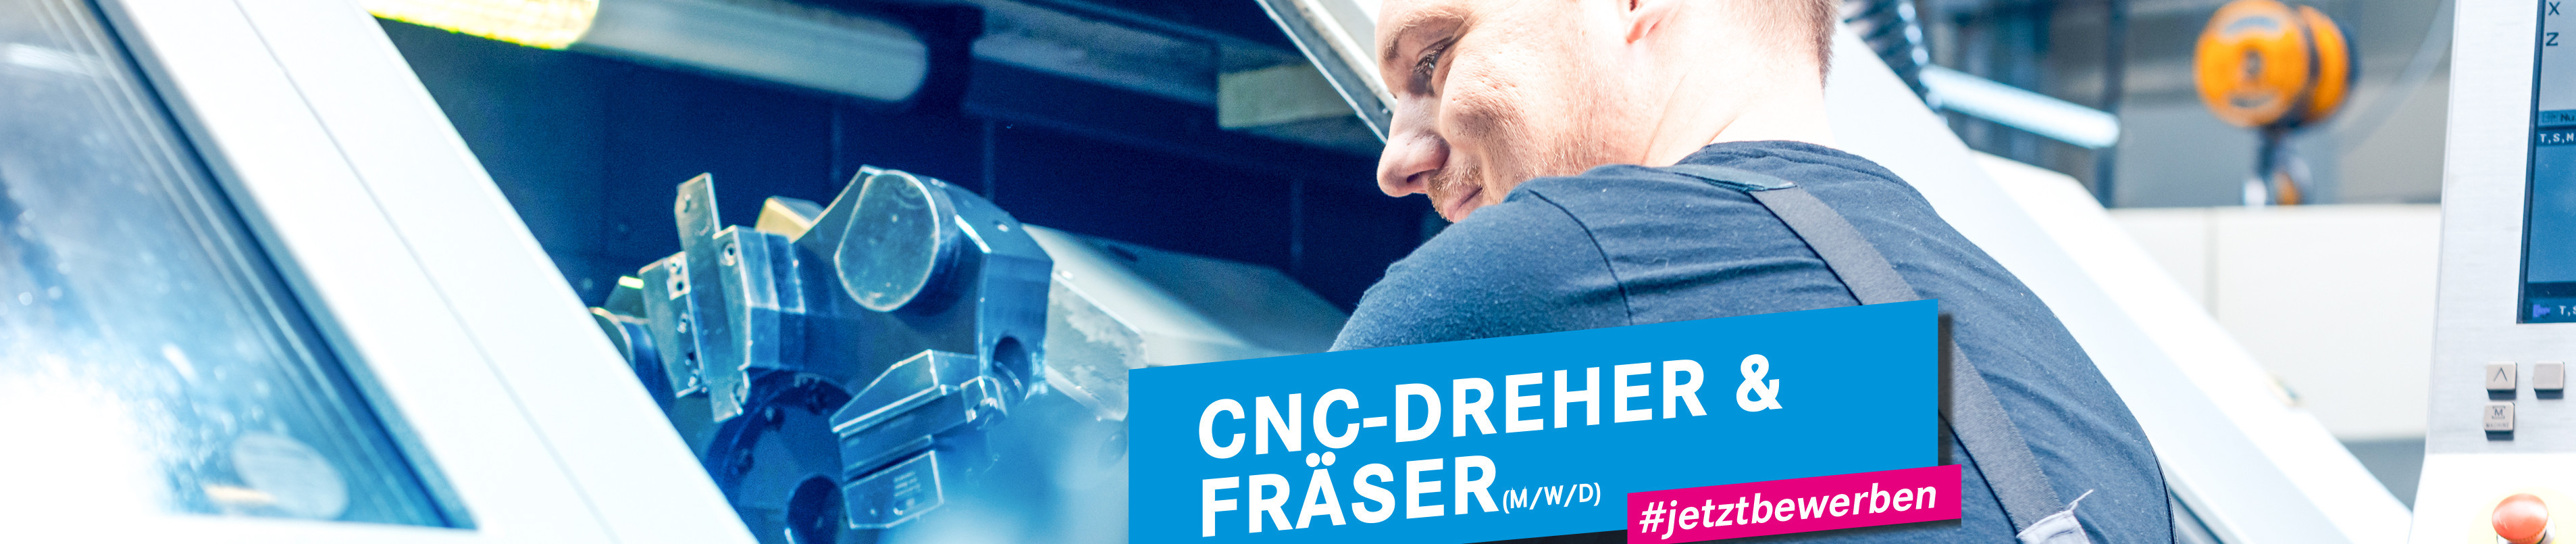 Wir suchen CNC-Dreher / Fräser in Frankfurt (Oder)!